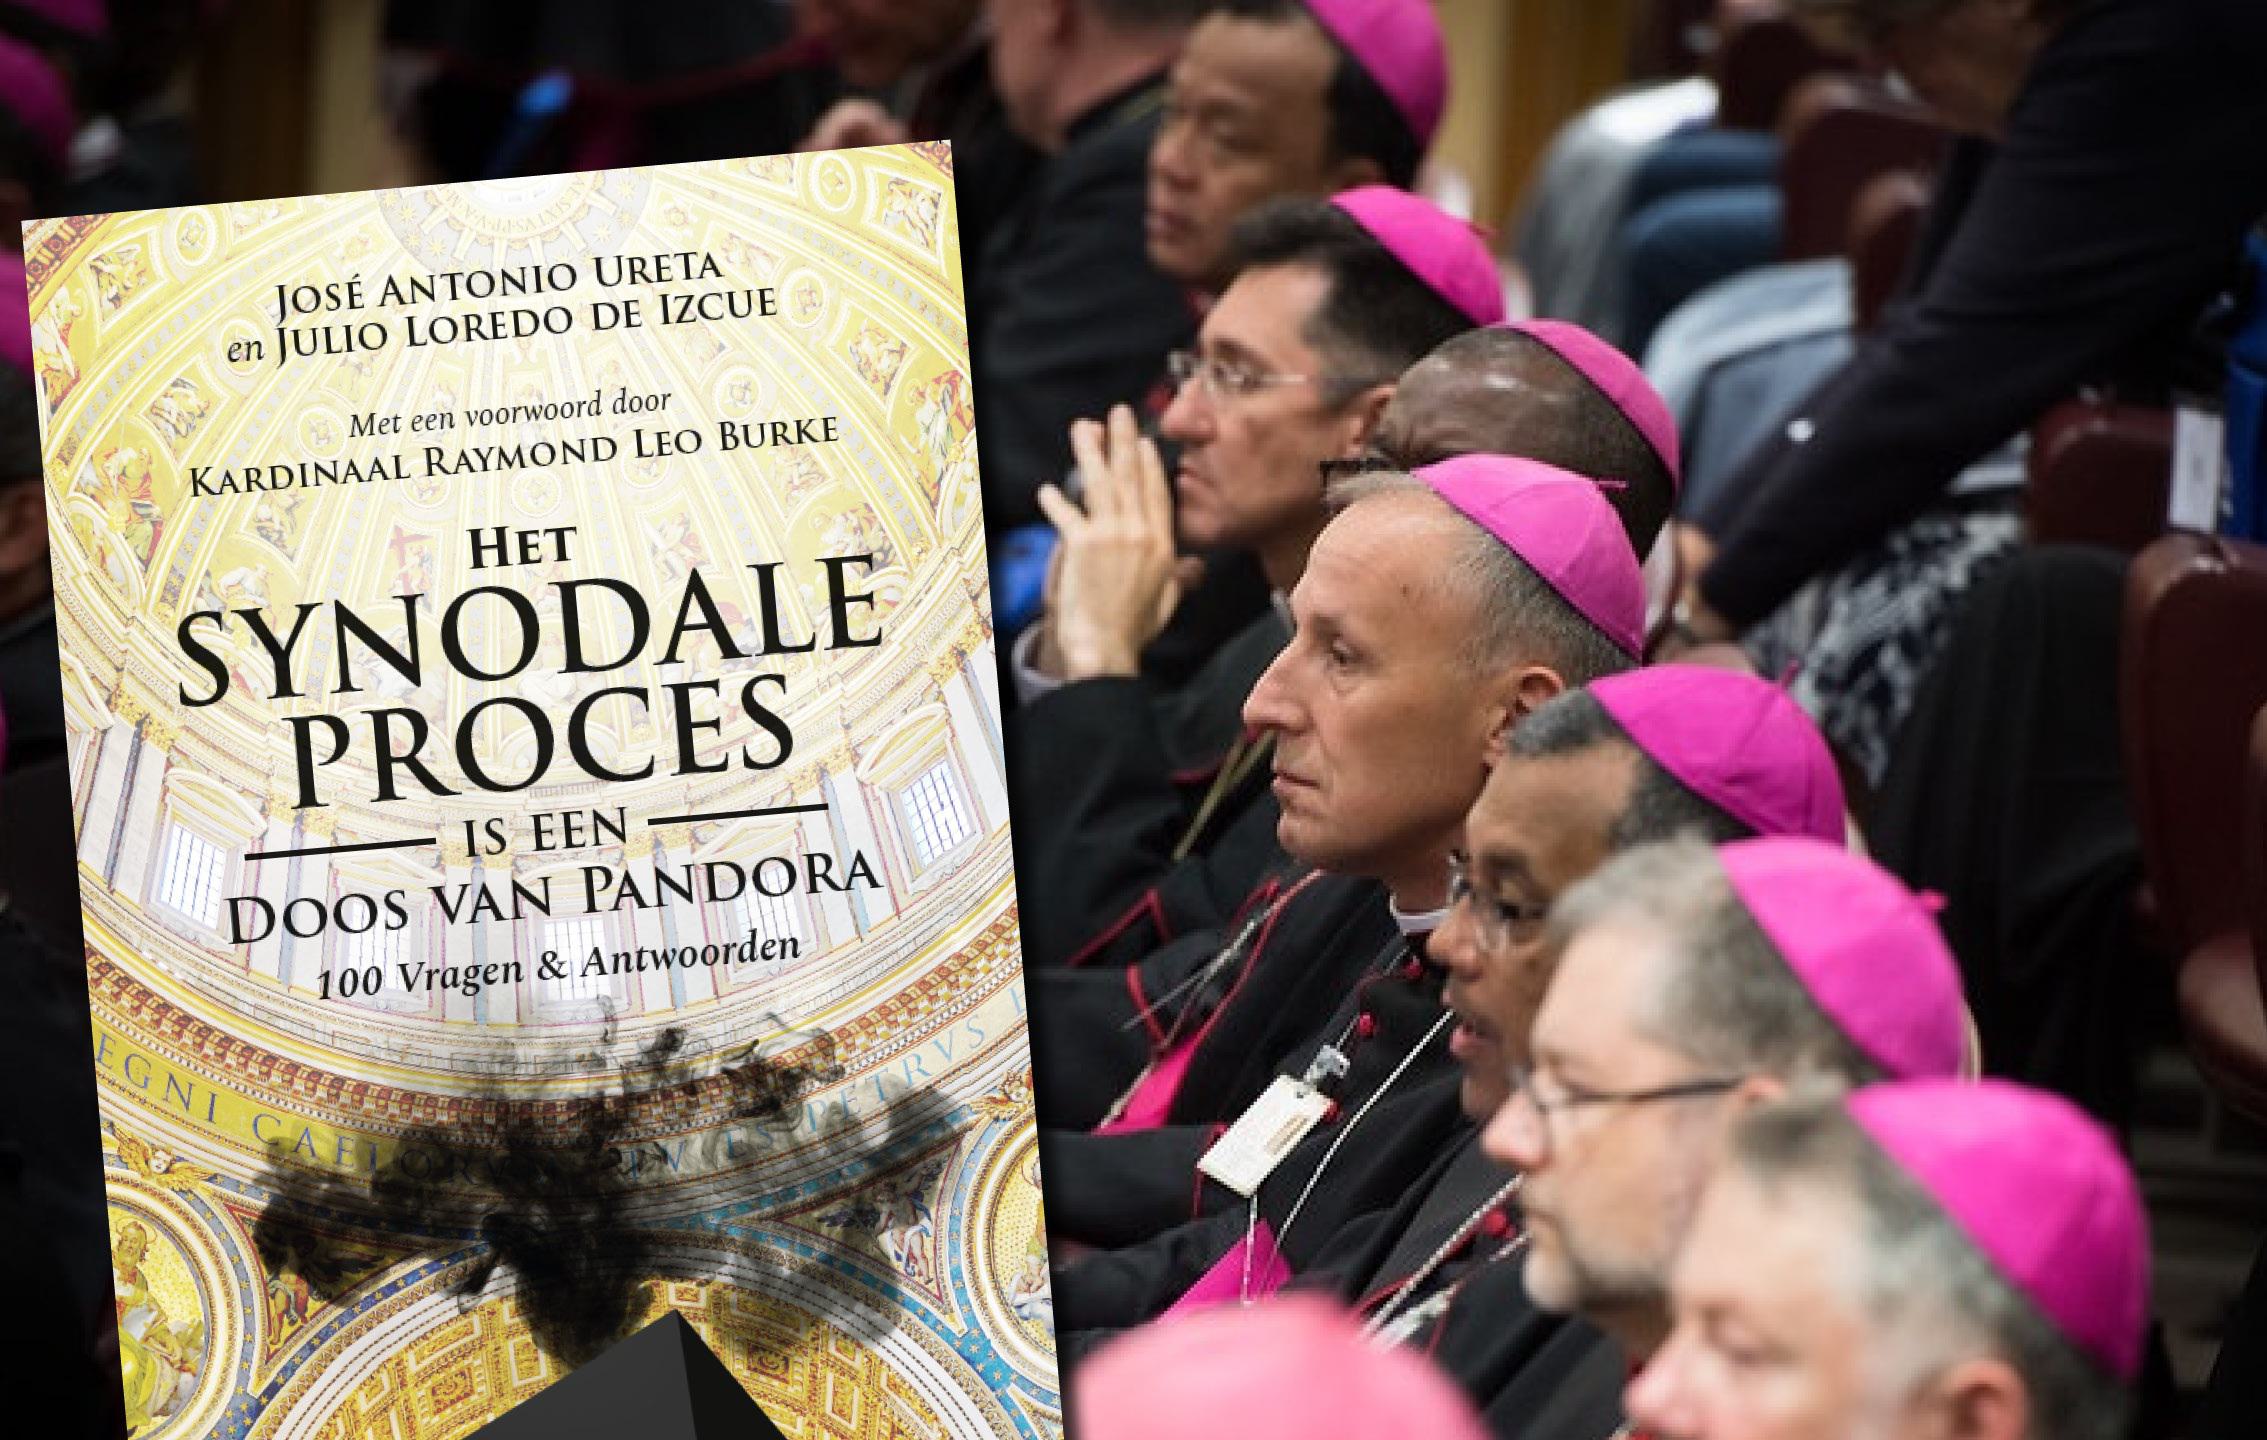 "Het synodale proces is een doos van Pandora": een alarmkreet die hoop geeft